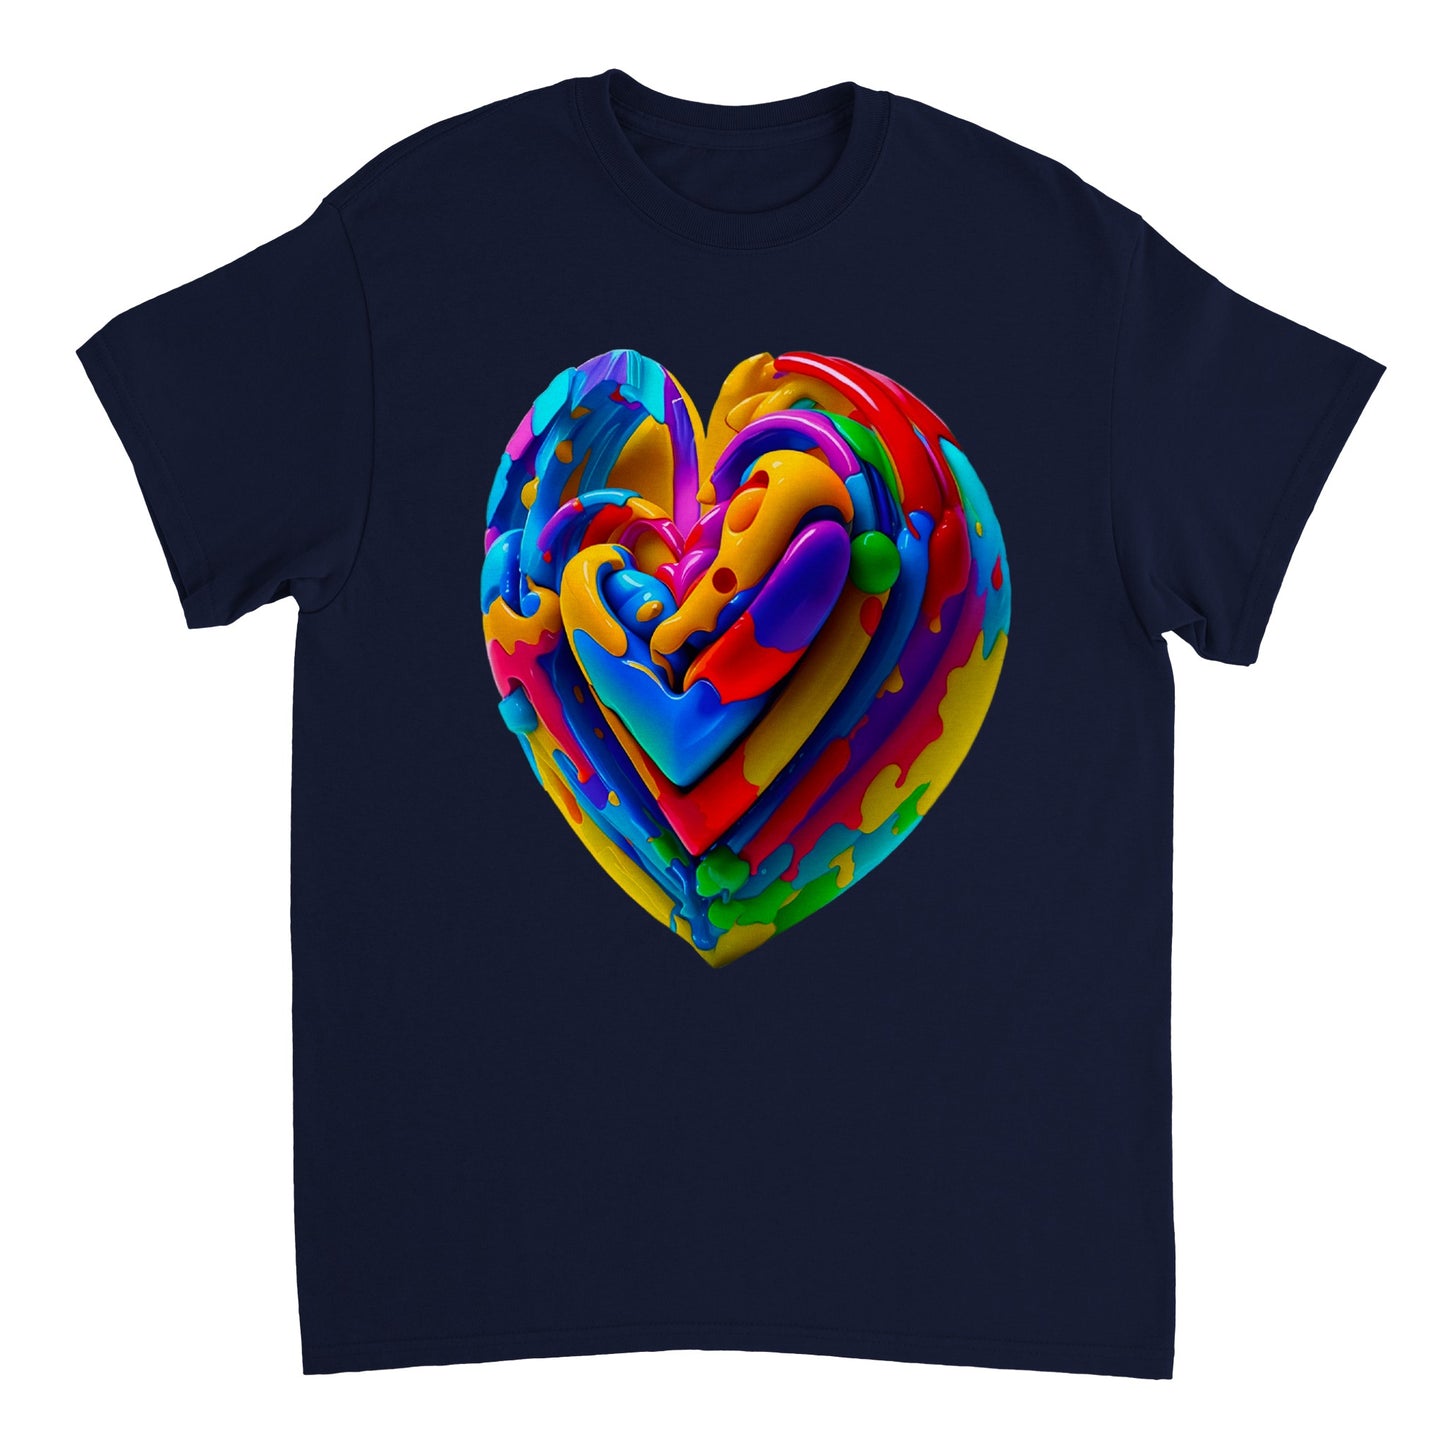 Love Heart - Heavyweight Unisex Crewneck T-shirt 13